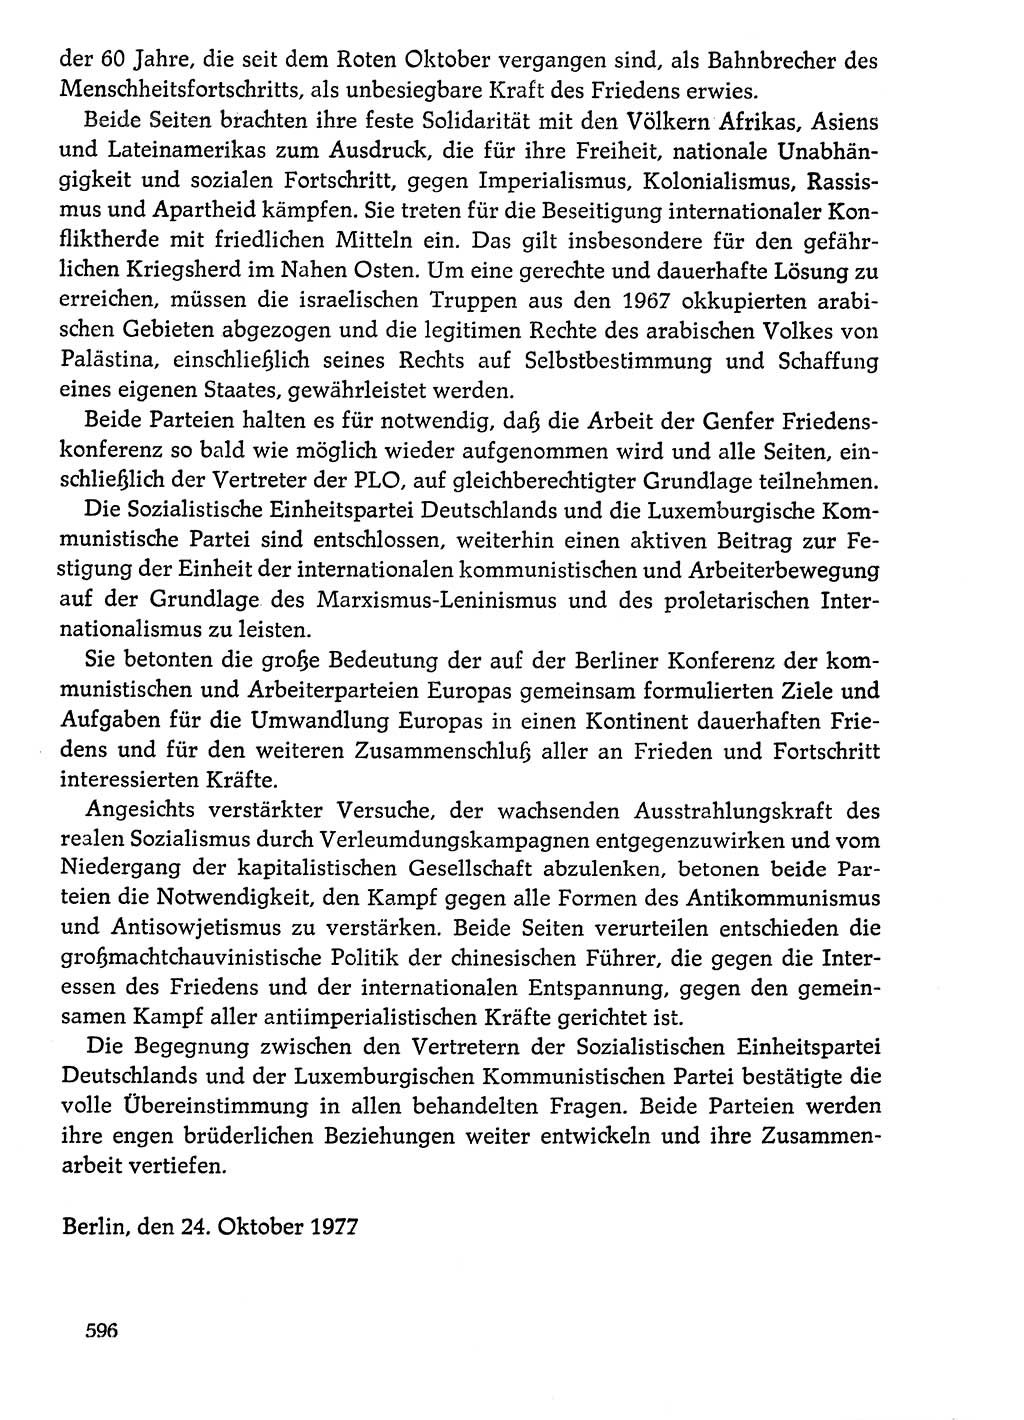 Dokumente der Sozialistischen Einheitspartei Deutschlands (SED) [Deutsche Demokratische Republik (DDR)] 1976-1977, Seite 596 (Dok. SED DDR 1976-1977, S. 596)